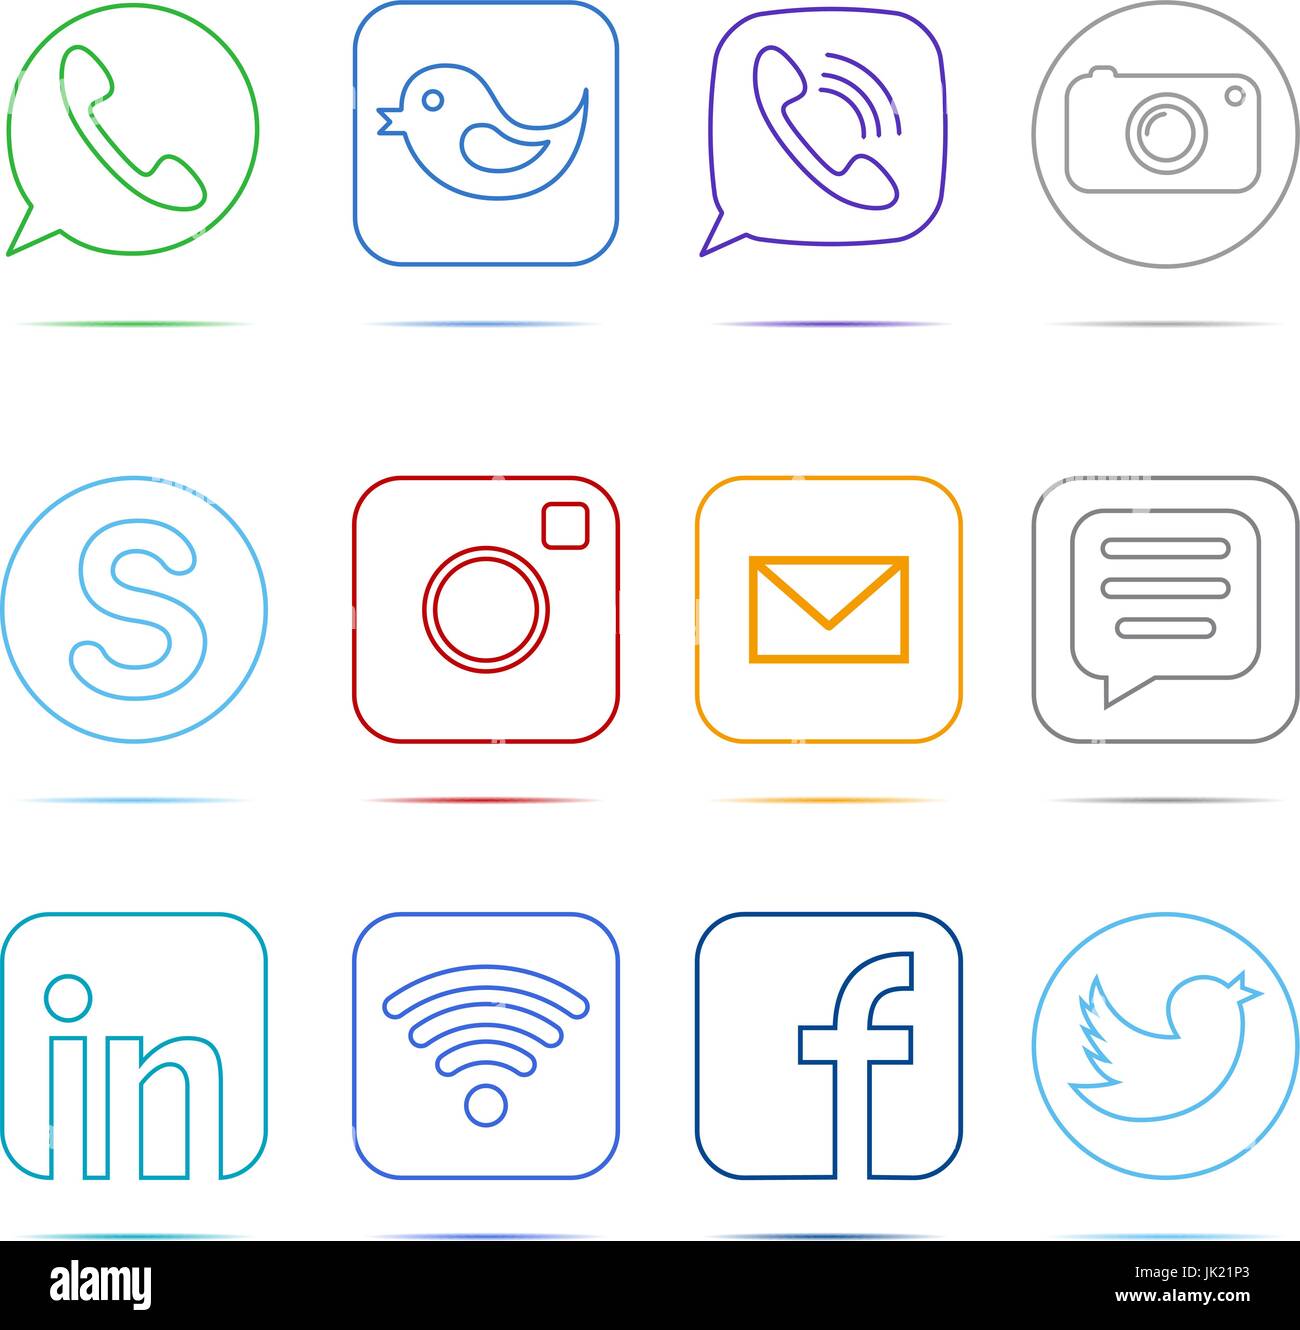 Flache gestaltete Vektor-Icons von Digitalkamera, wie Hand-Symbol, Daumen nach oben, Messenger Vogel und Telefonhörer für soziale Medien, Websites, Schnittstelle Stock Vektor